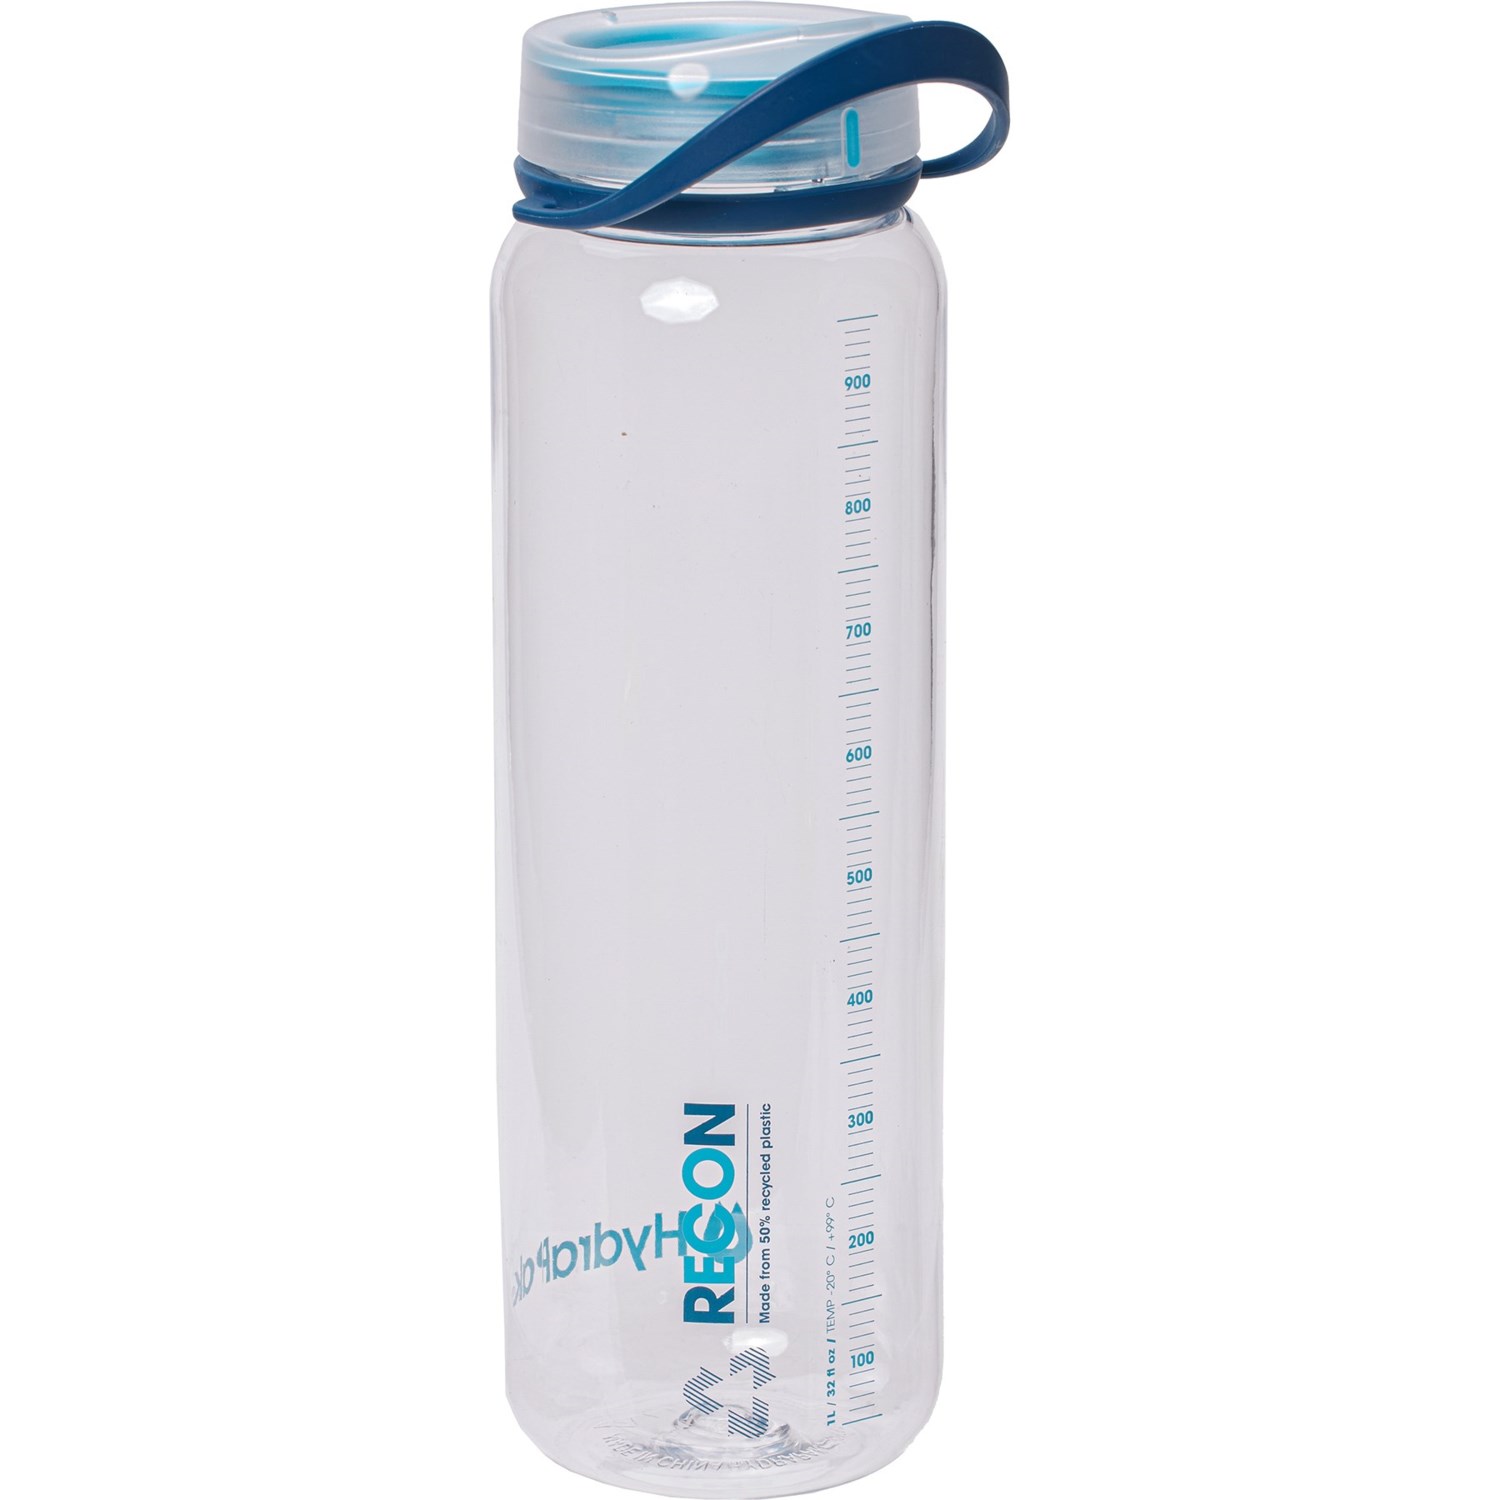 Hydrapak Recon 1L Bottle - Clear Navy Cyan